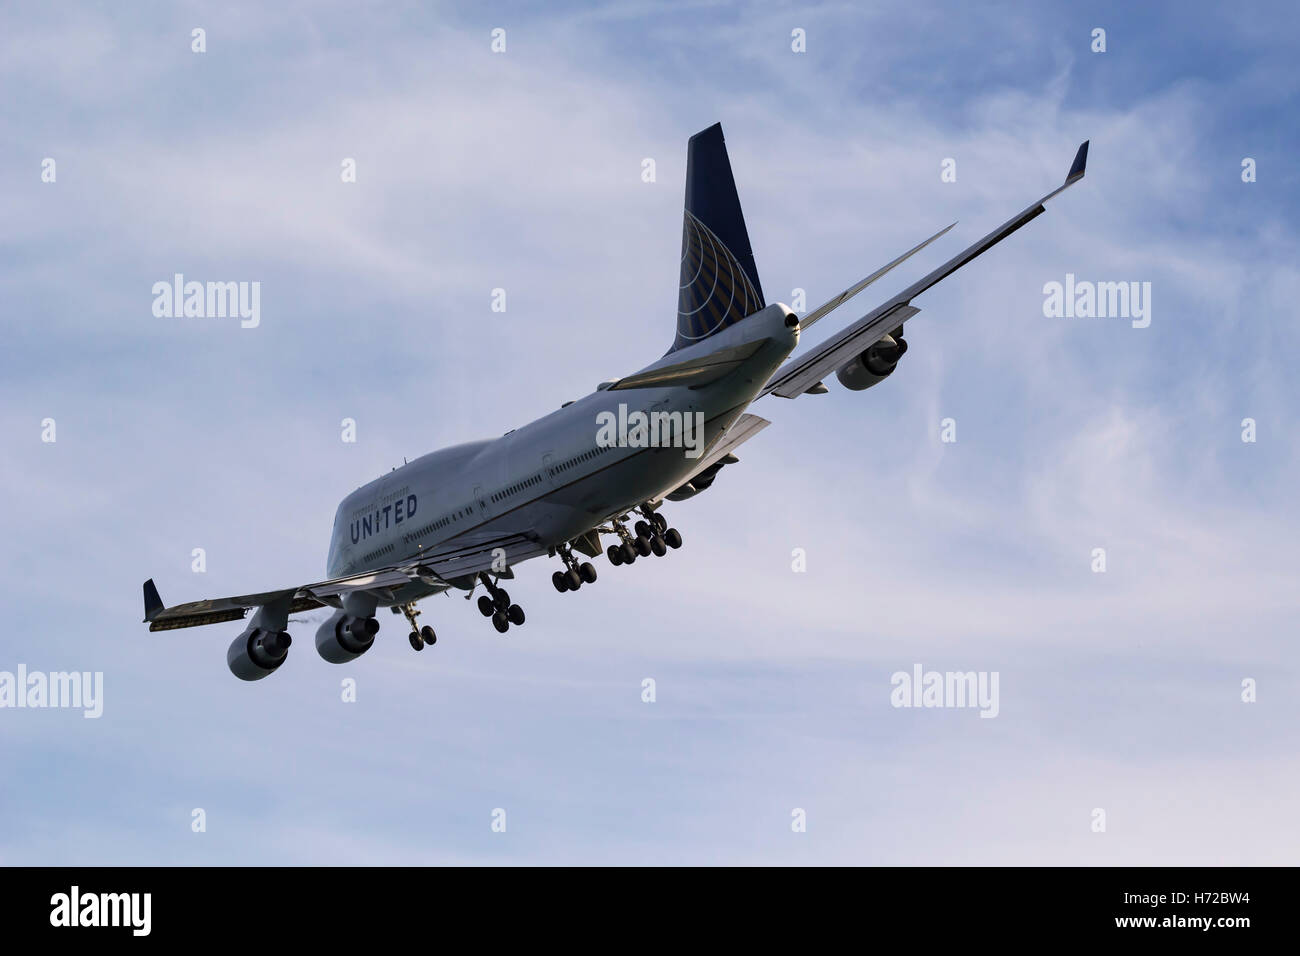 United Airlines Boeing 747 en configuration d'atterrissage. Banque D'Images